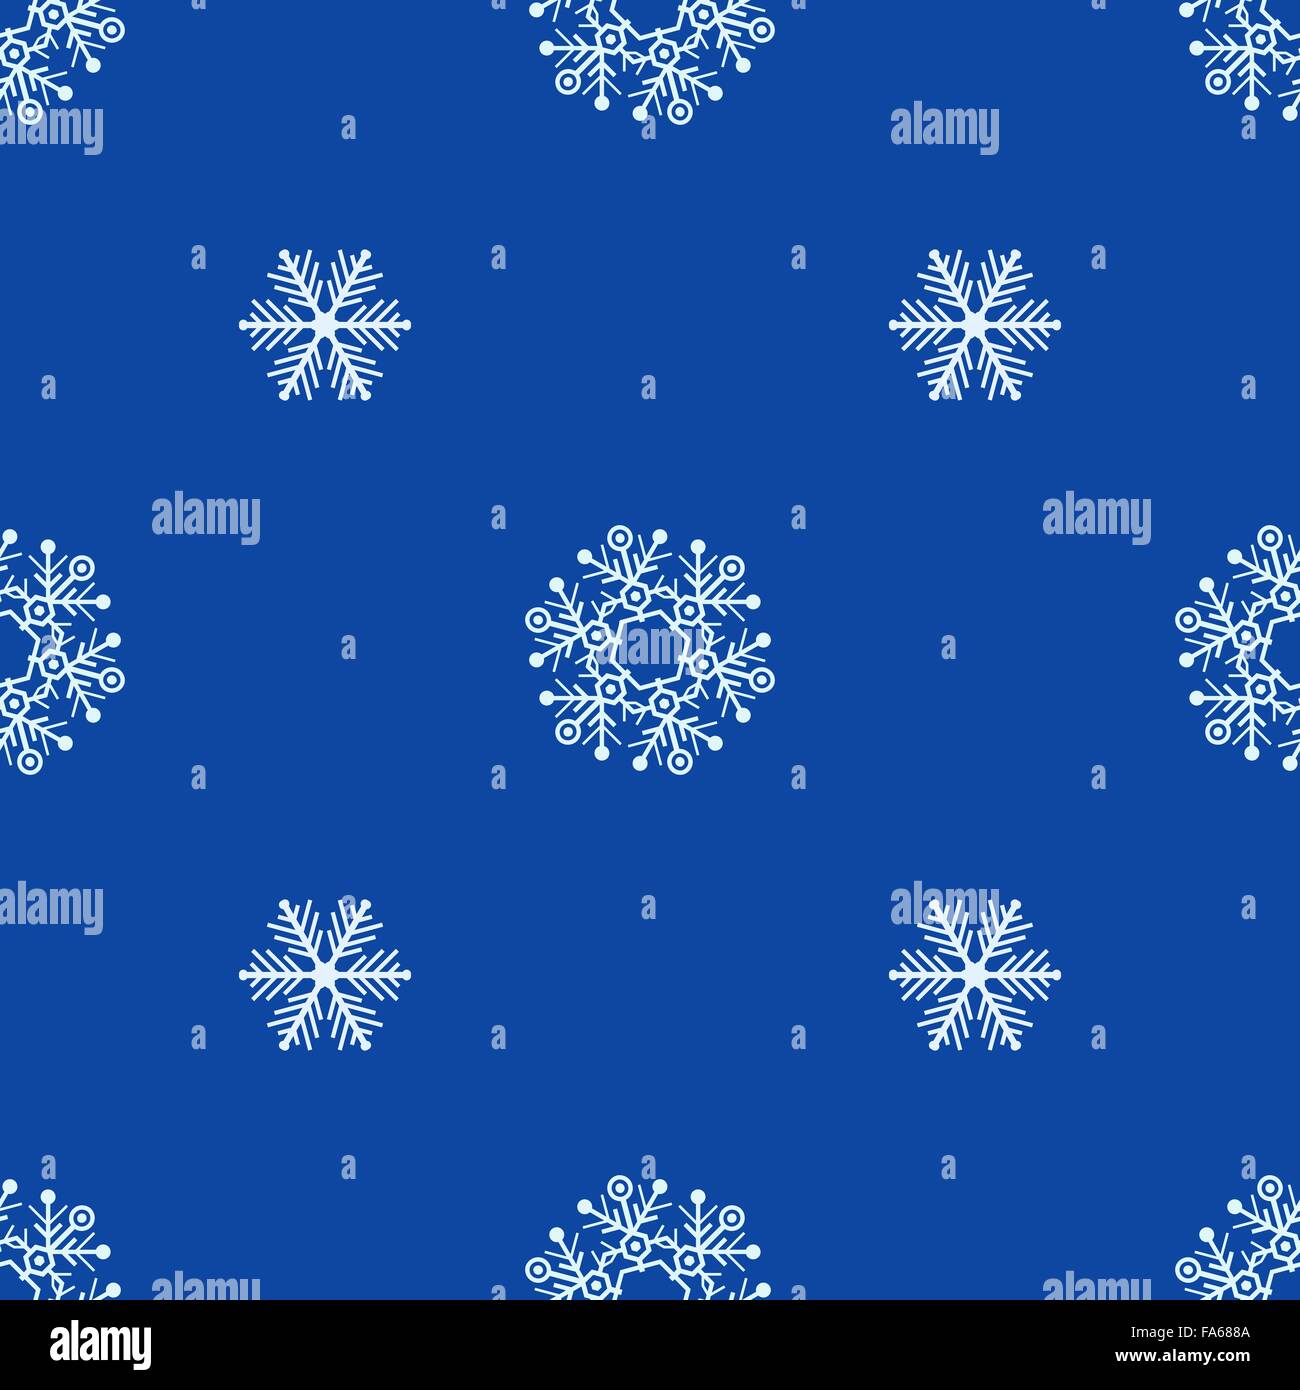 Vektor-farbige flache Bauweise Neujahr Weihnachten weiße Cyan Schneeflocken nahtlose Muster auf blauem Hintergrund Stock Vektor